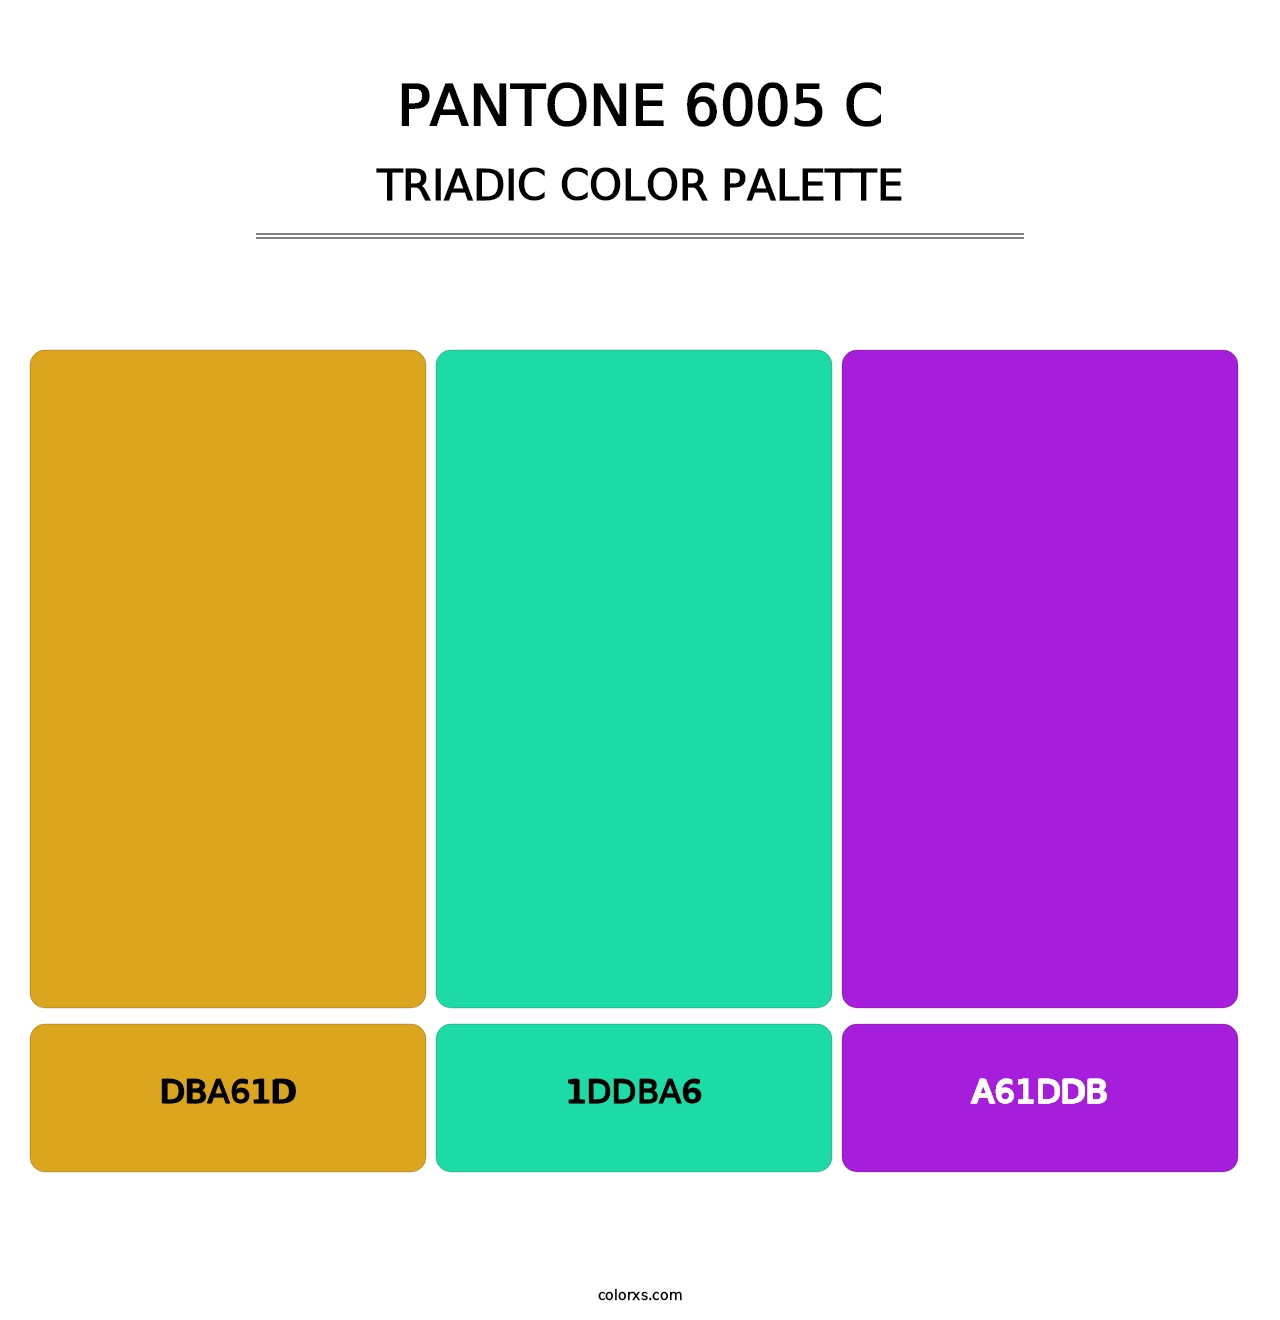 PANTONE 6005 C - Triadic Color Palette